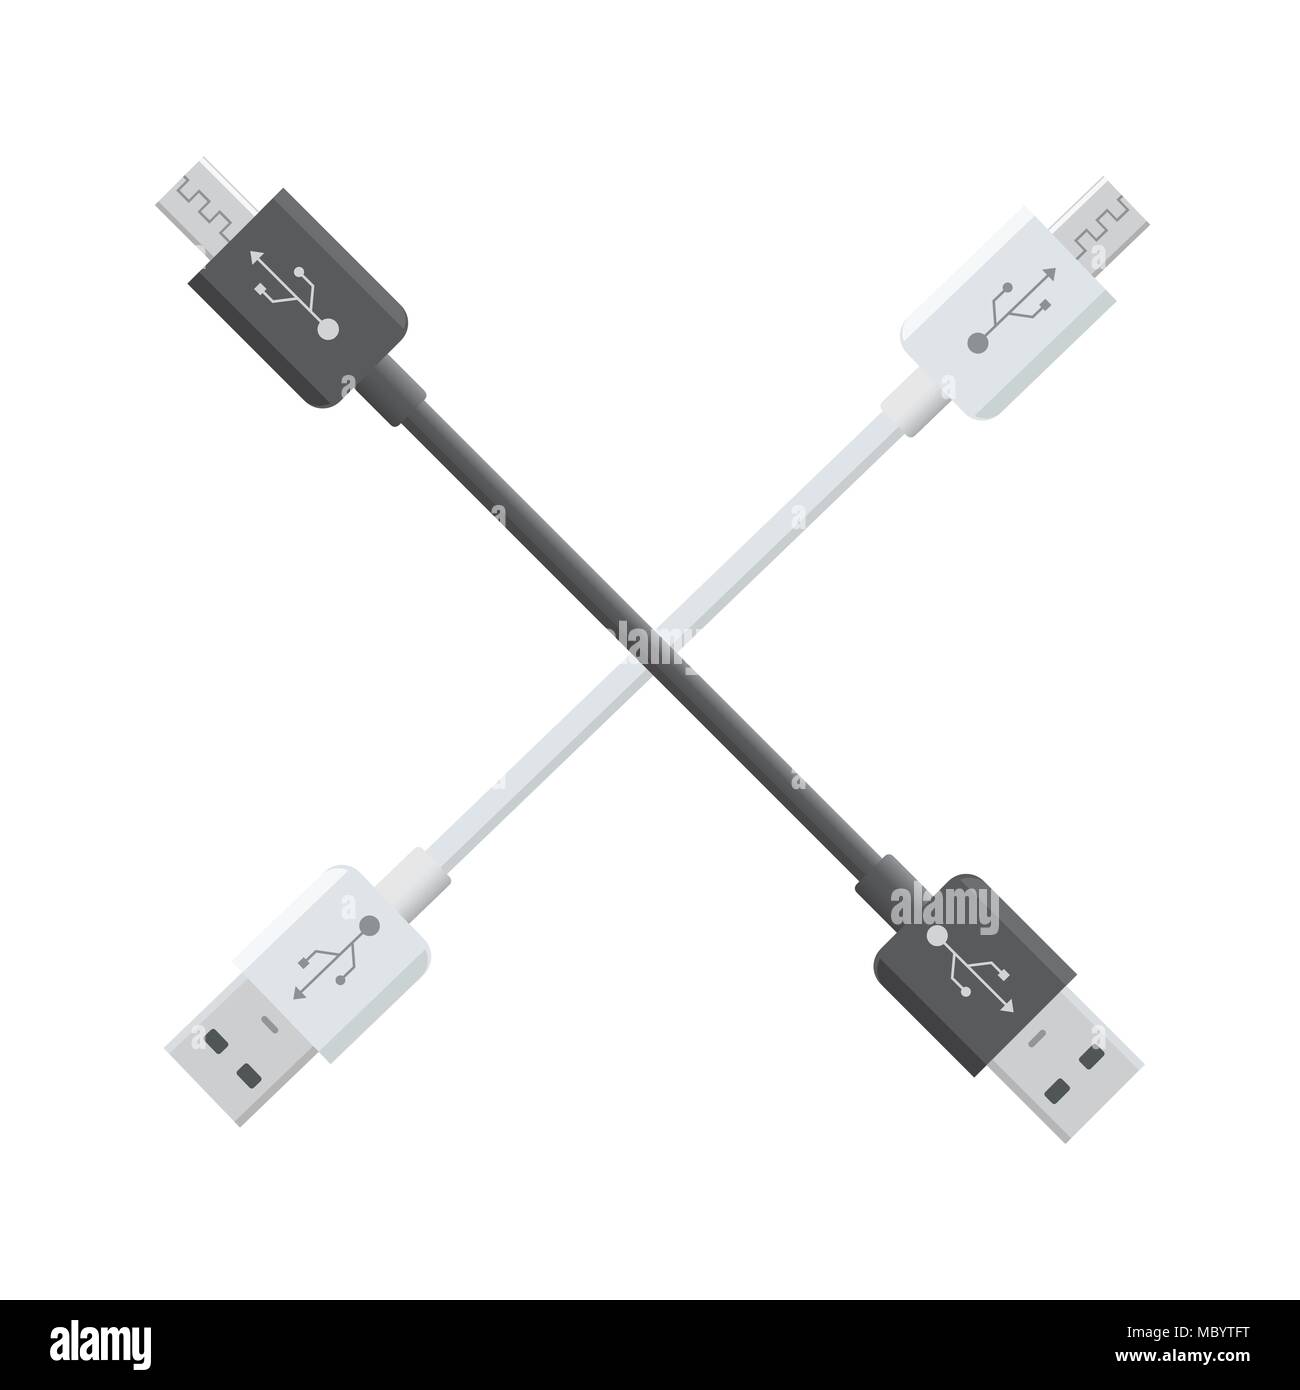 USB micro Kabel isoliert auf weißem Hintergrund. Stecker und Steckdosen für PC und mobile Geräte. Computer Peripherie Stecker oder Smartphone aufladen Stock Vektor